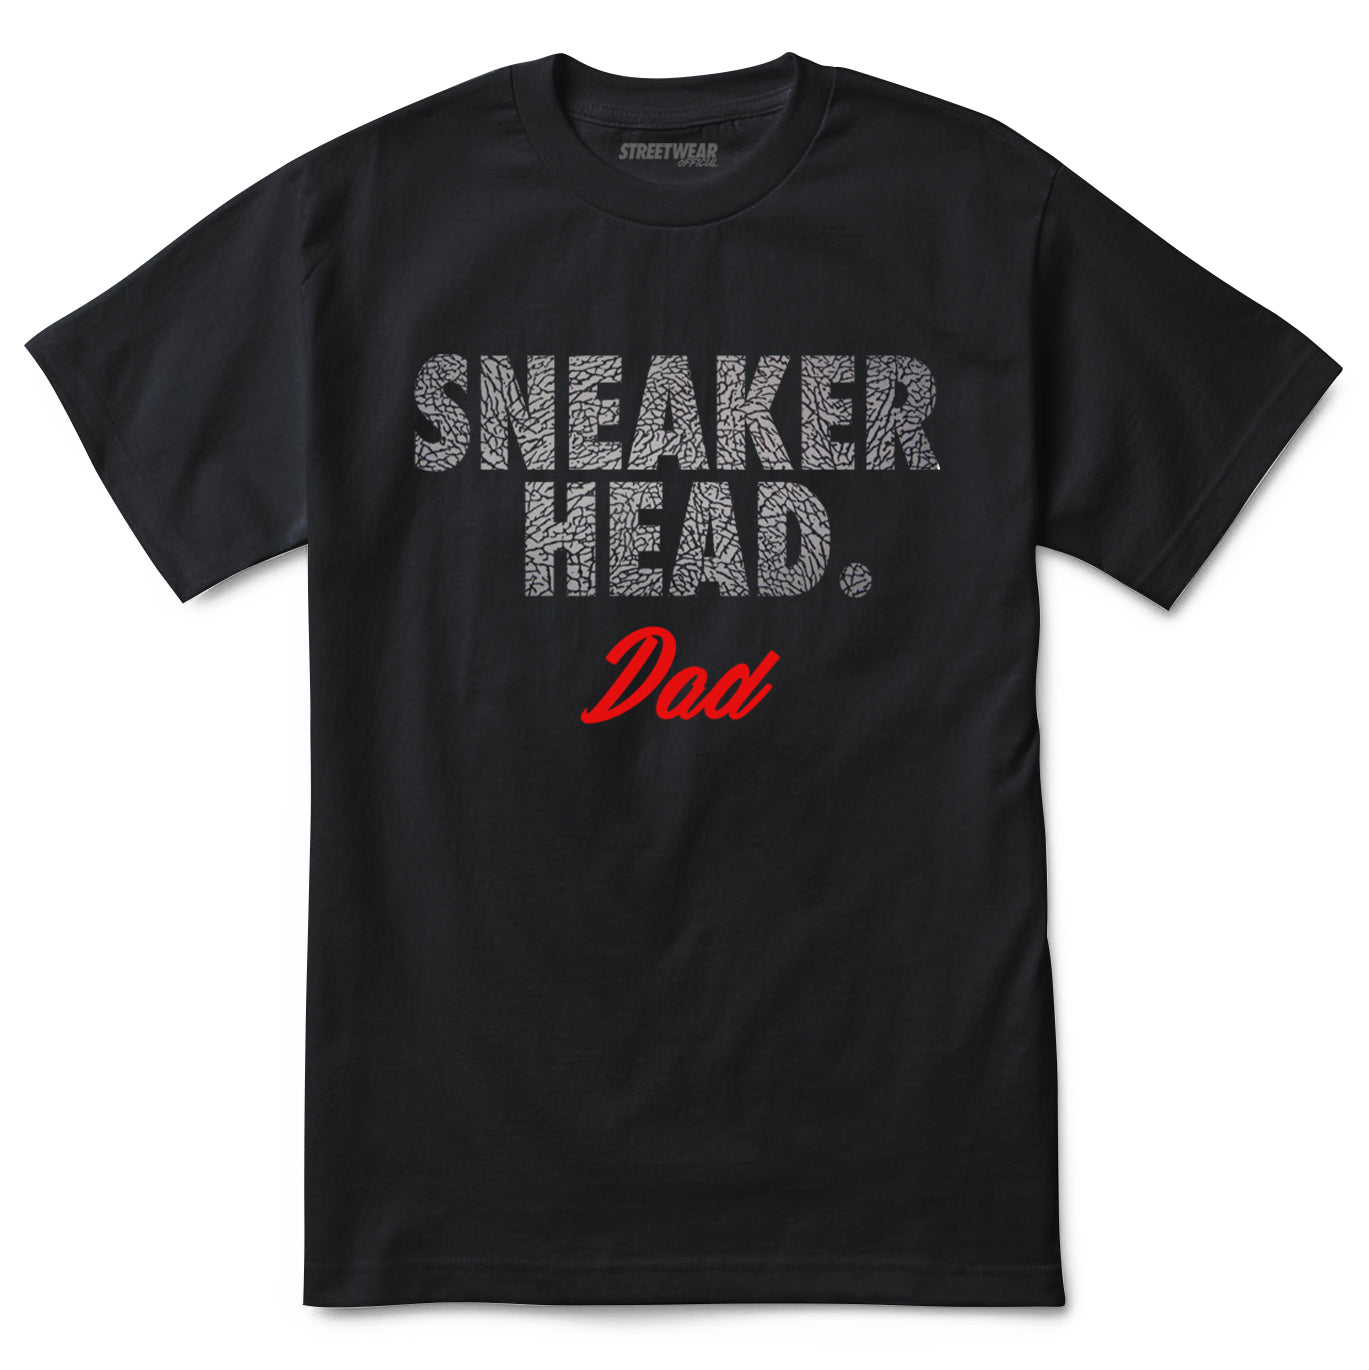 Sneaker Head Dad